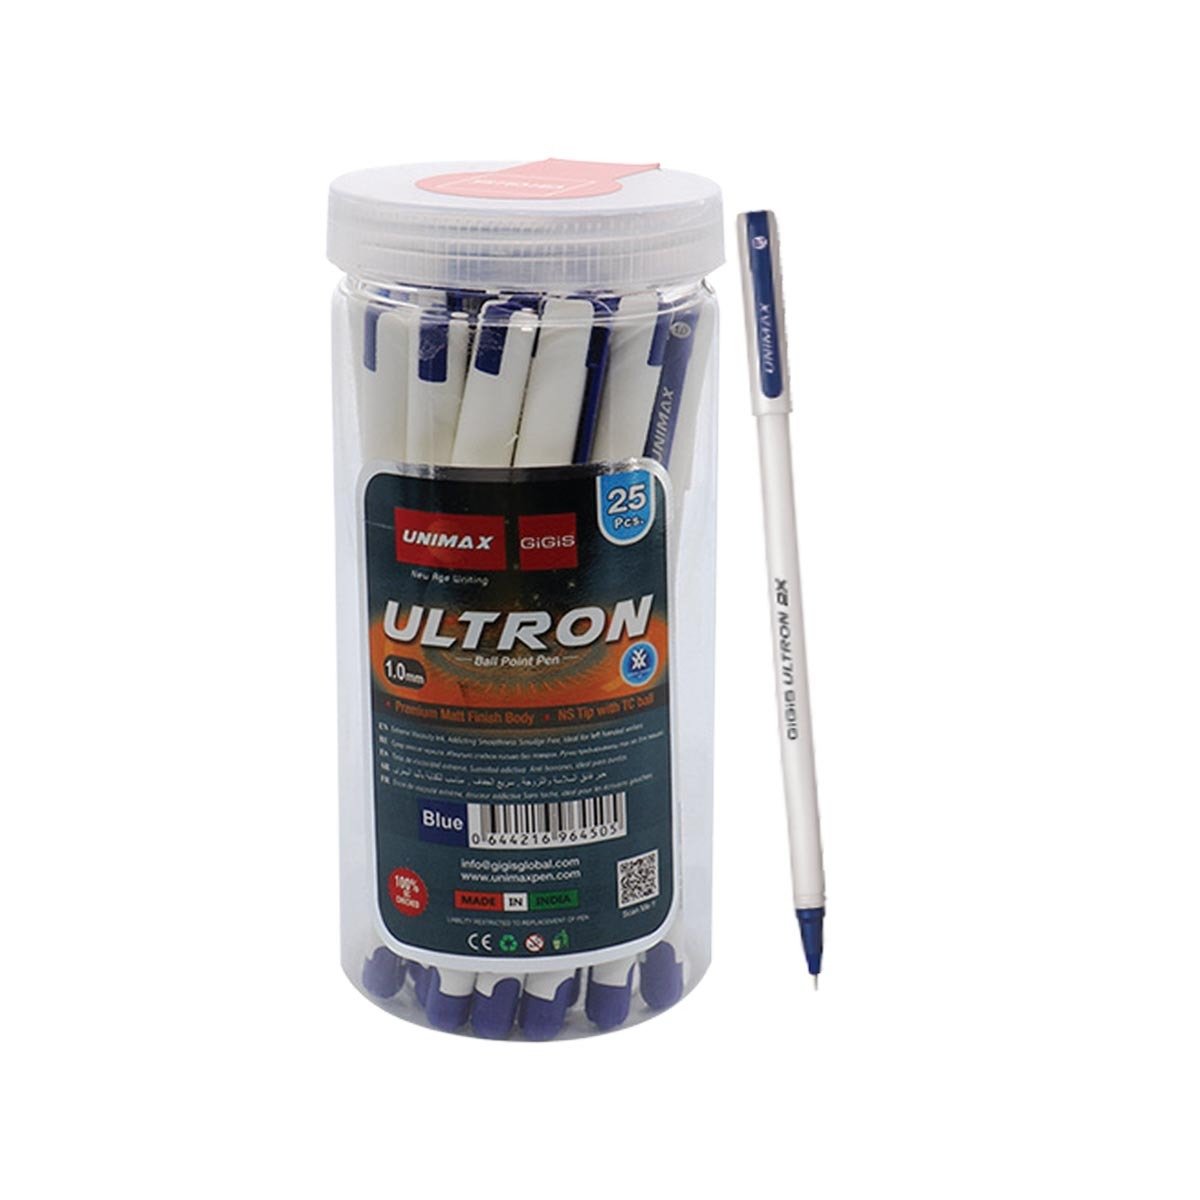 Unimax 1.0mm Ultron Blue Pen 25pcs